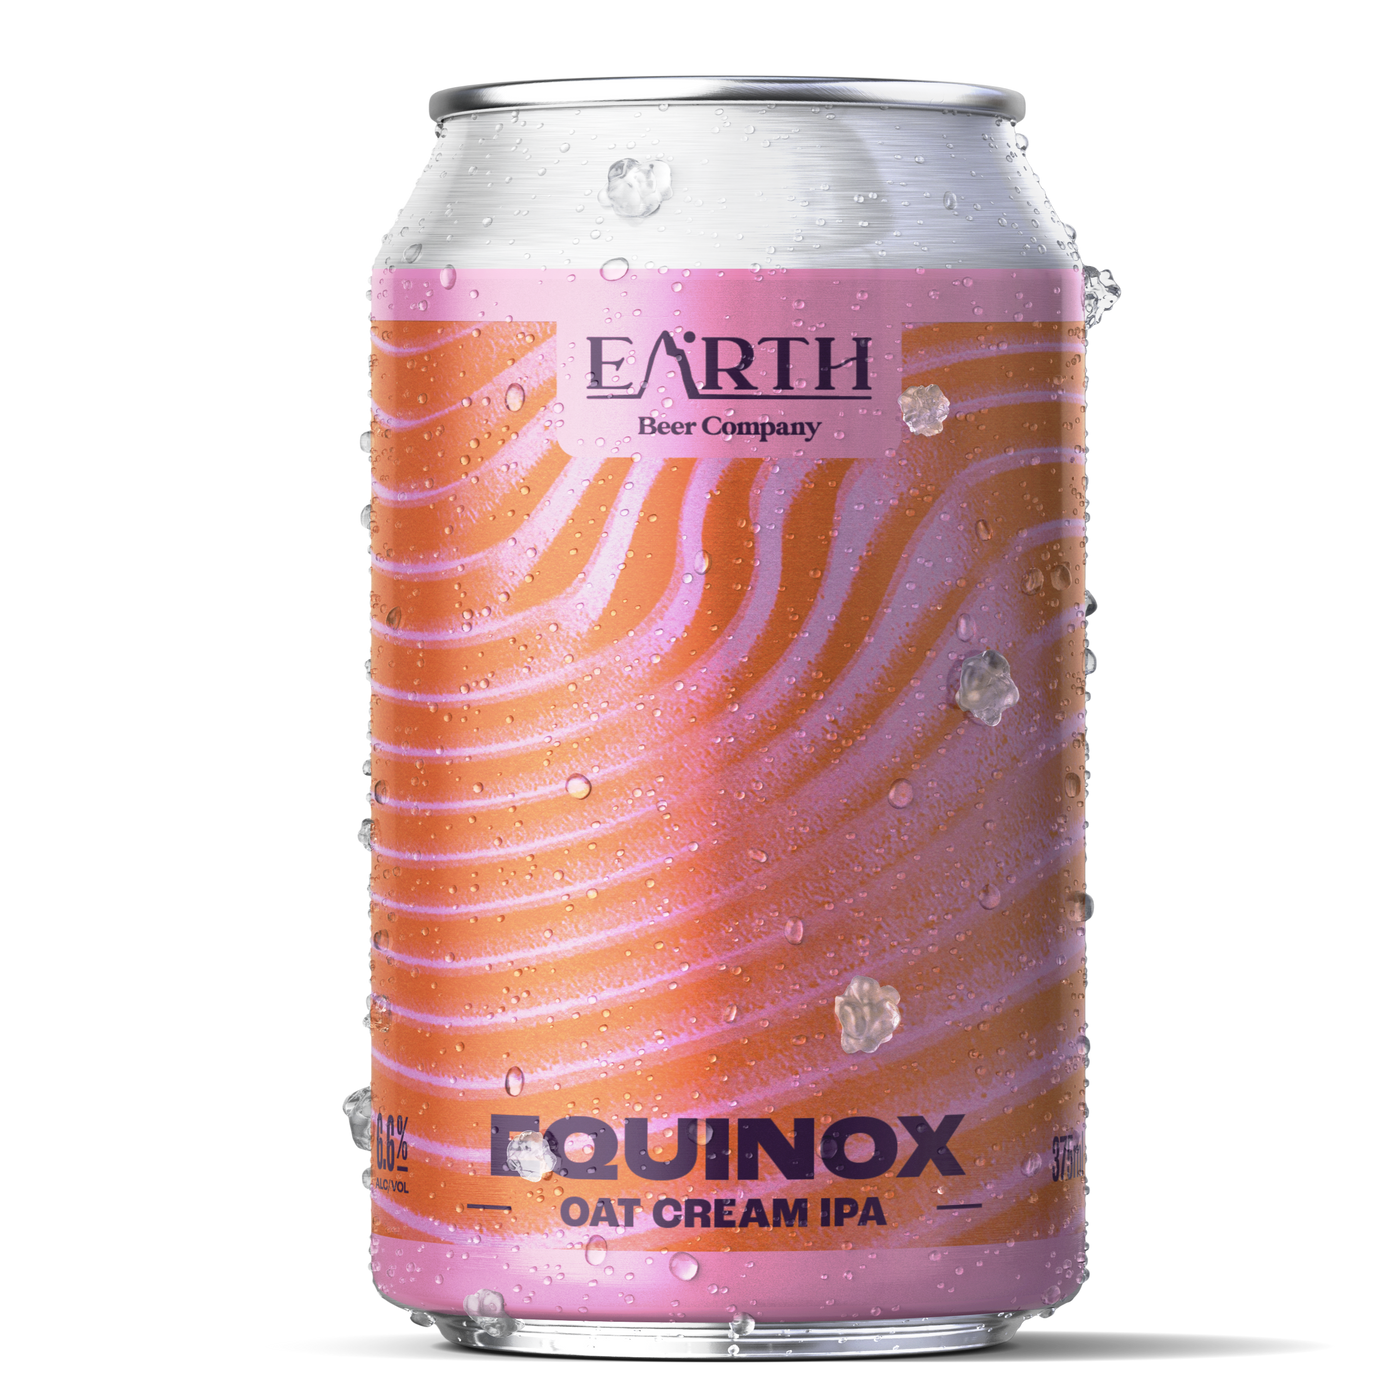 The Range Beyond: Equinox Oat Cream IPA 6.6%